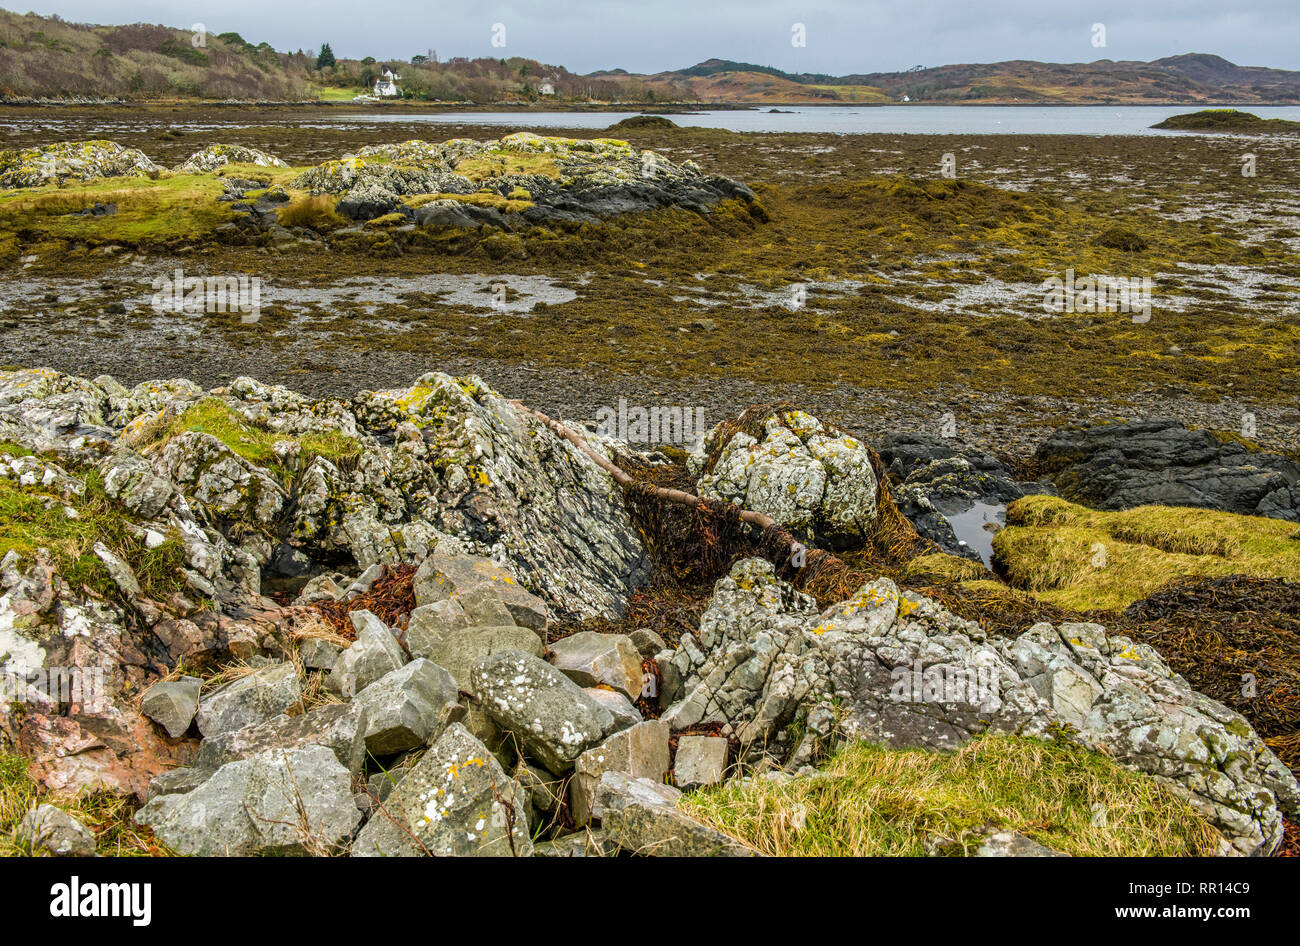 Arisaig Beach, en la costa cerca de Invernesshire Mallaig Escocia - principalmente una orilla rocosa con parches arenosos y algas. Foto de stock